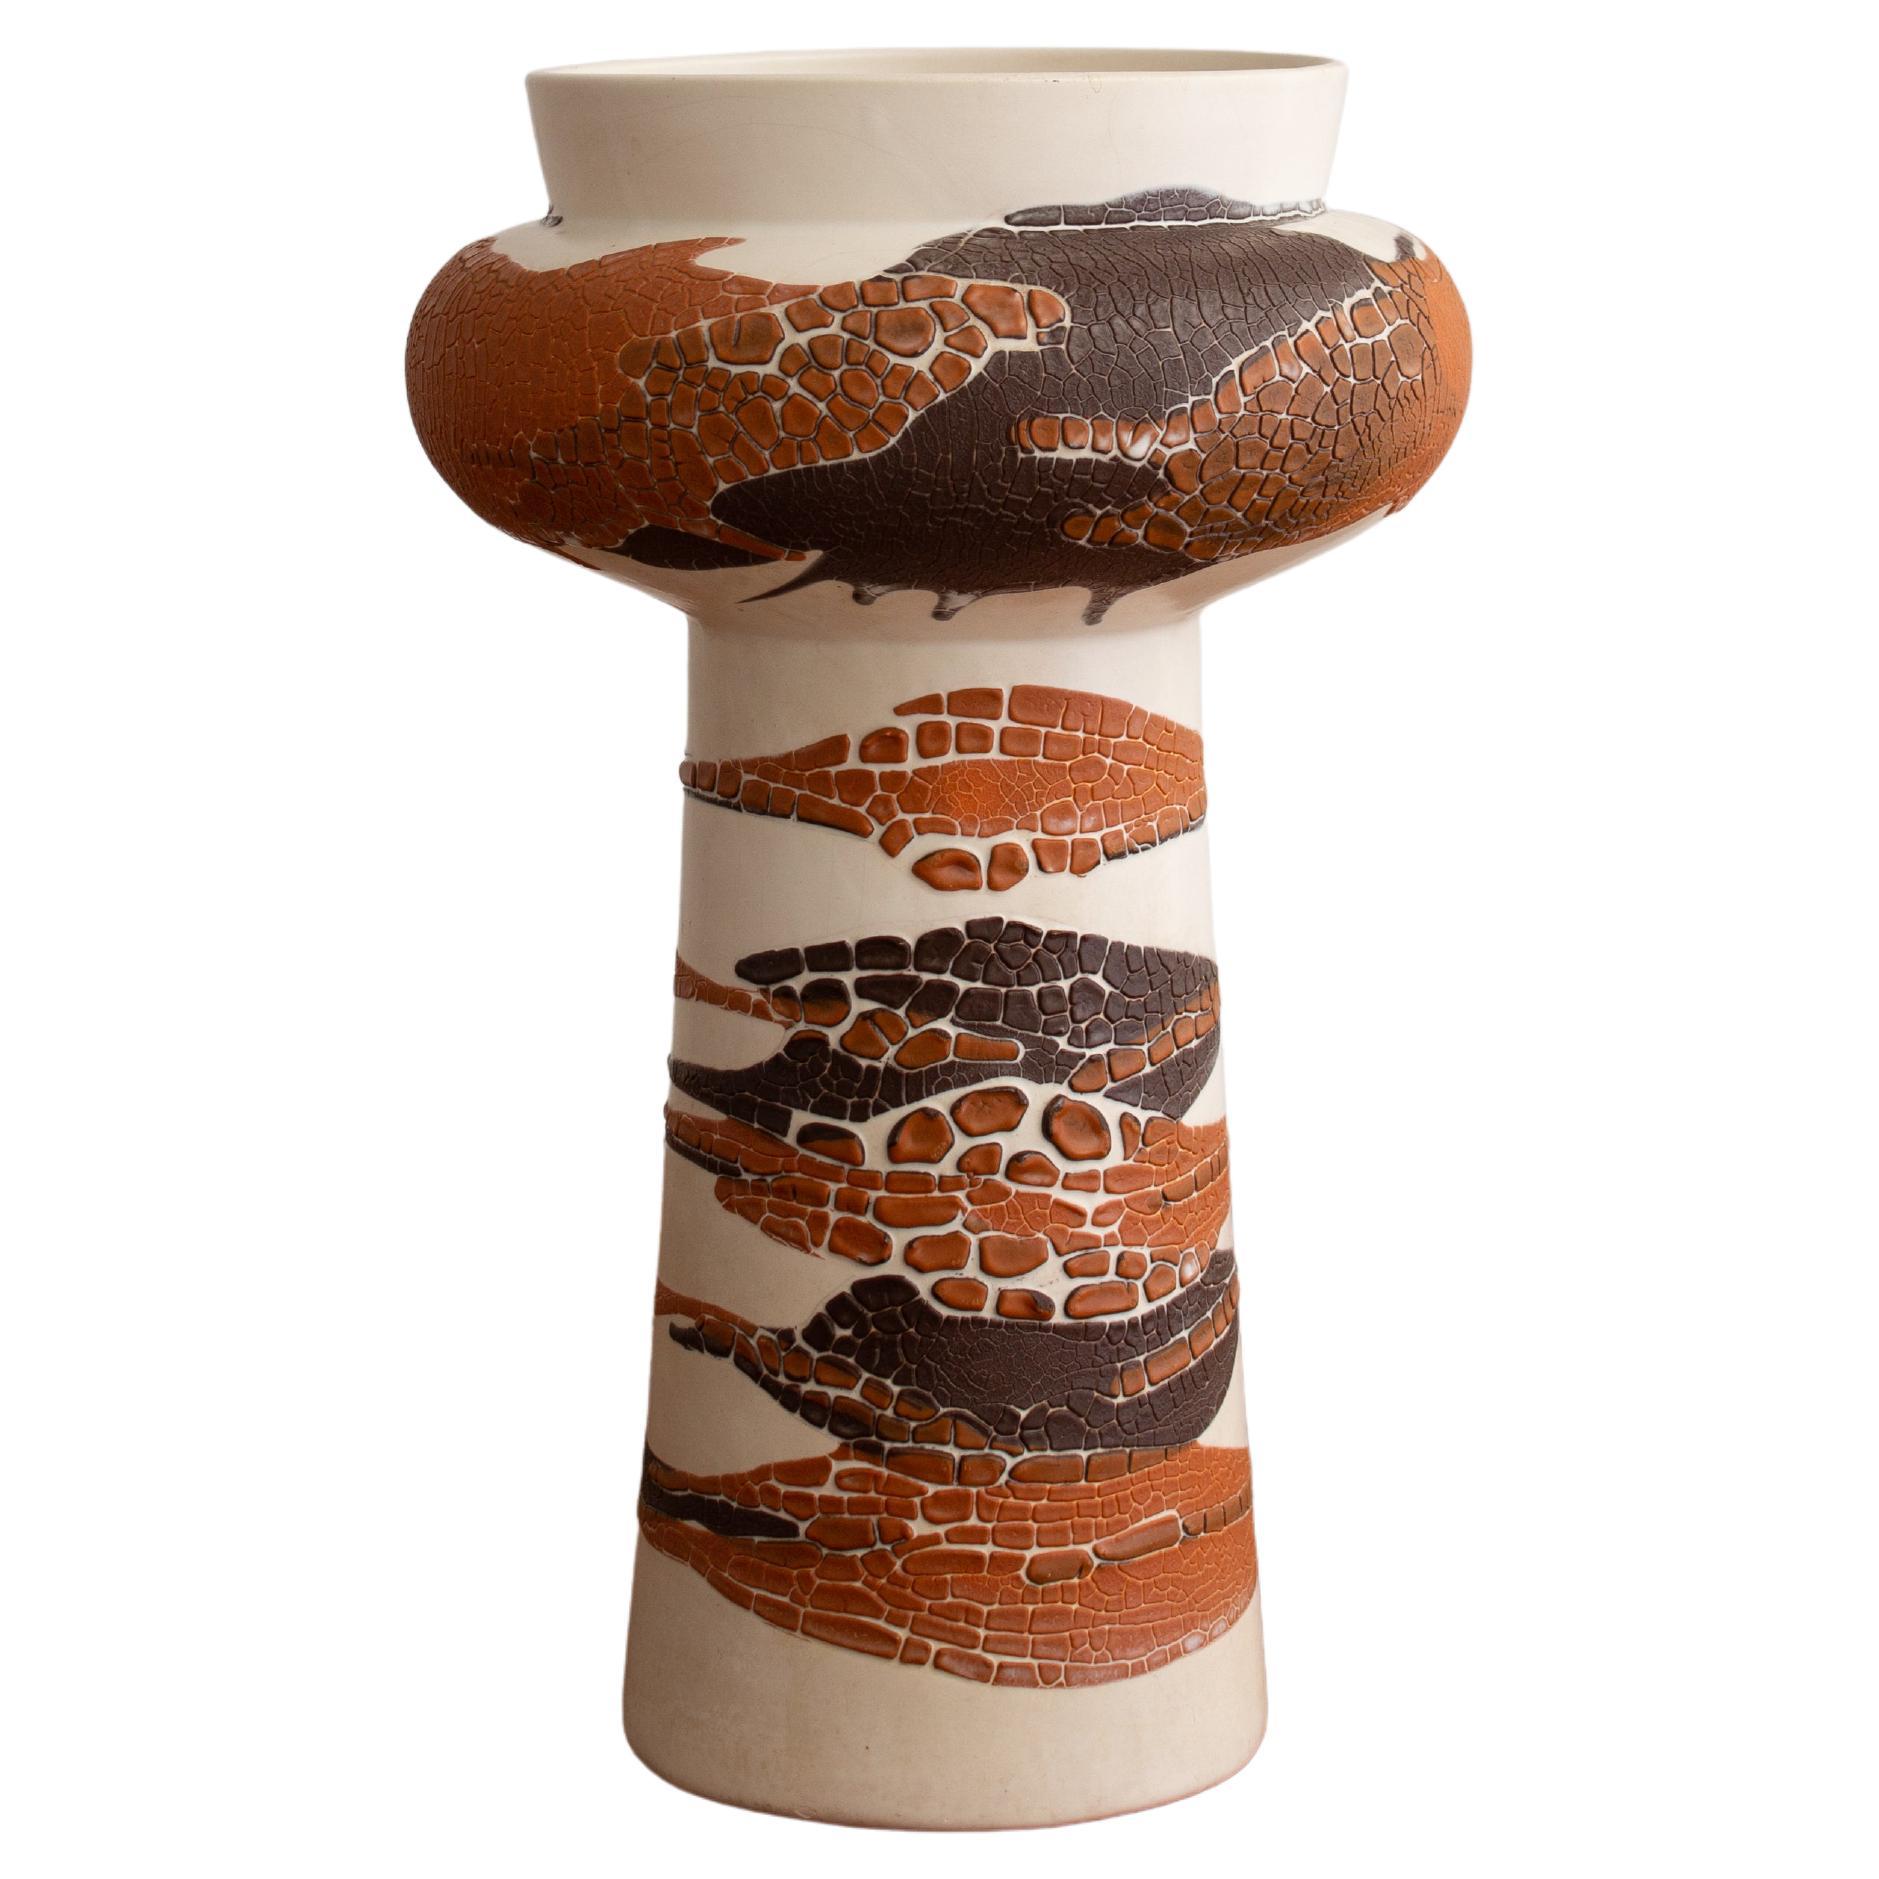 Royal Haeger “Earth Wrap” Sculptural Form Vase